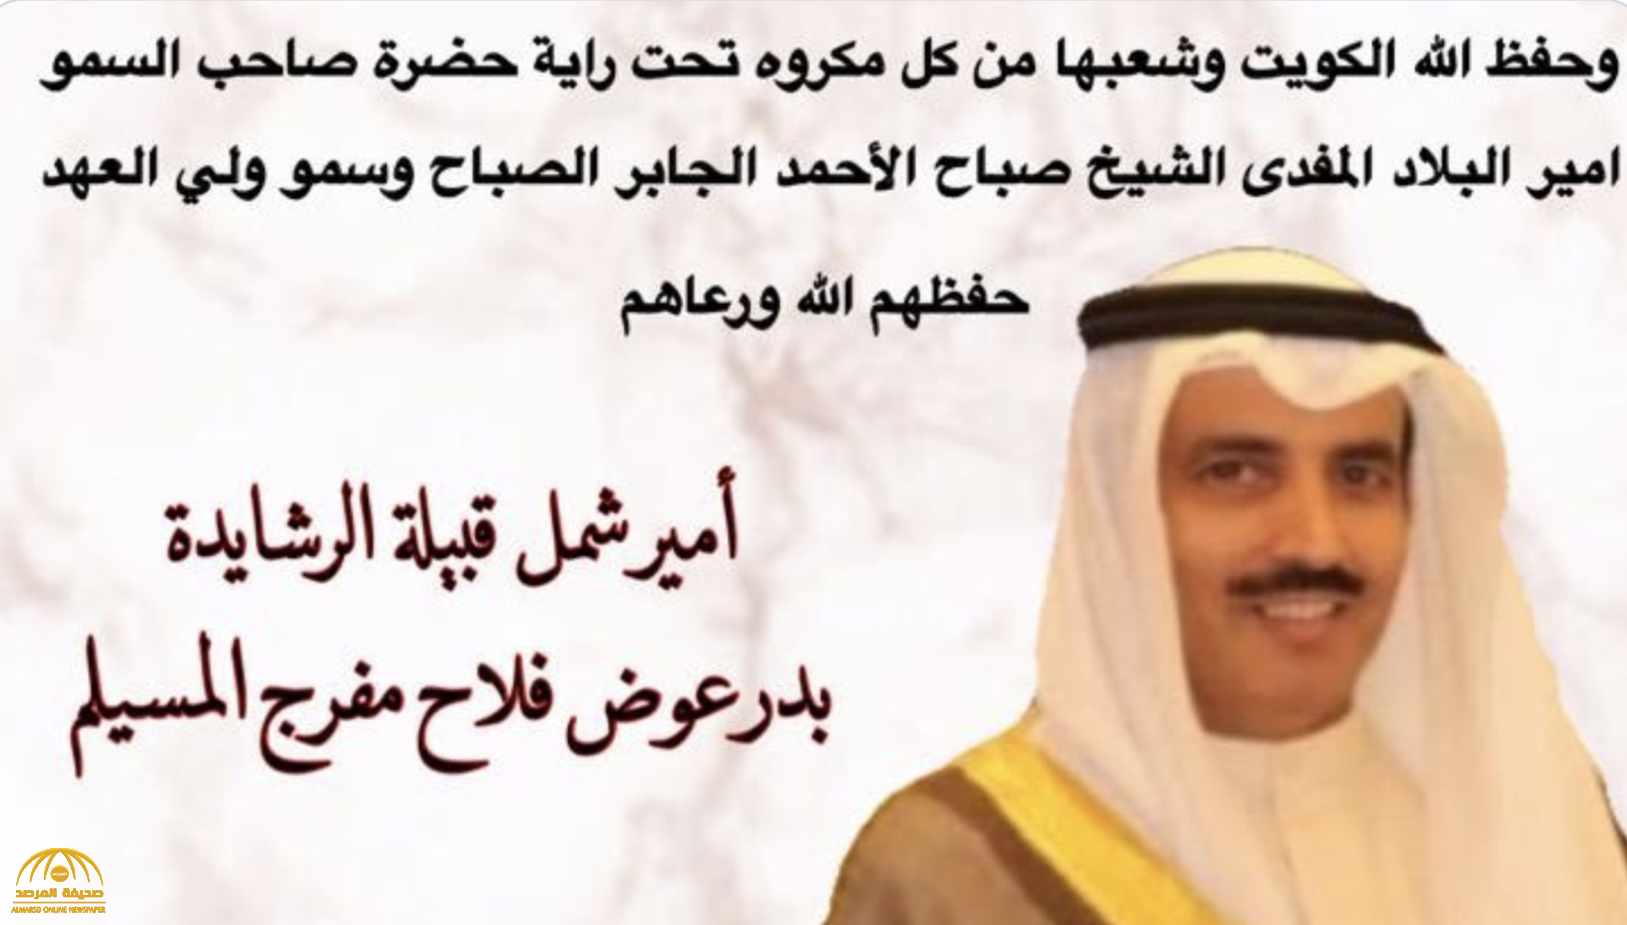 أمير شمل "الرشايدة" في الكويت يصدر بيانا هاما بشأن محادثة "مبارك الدويلة مع القذافي" والزج باسم القبيلة